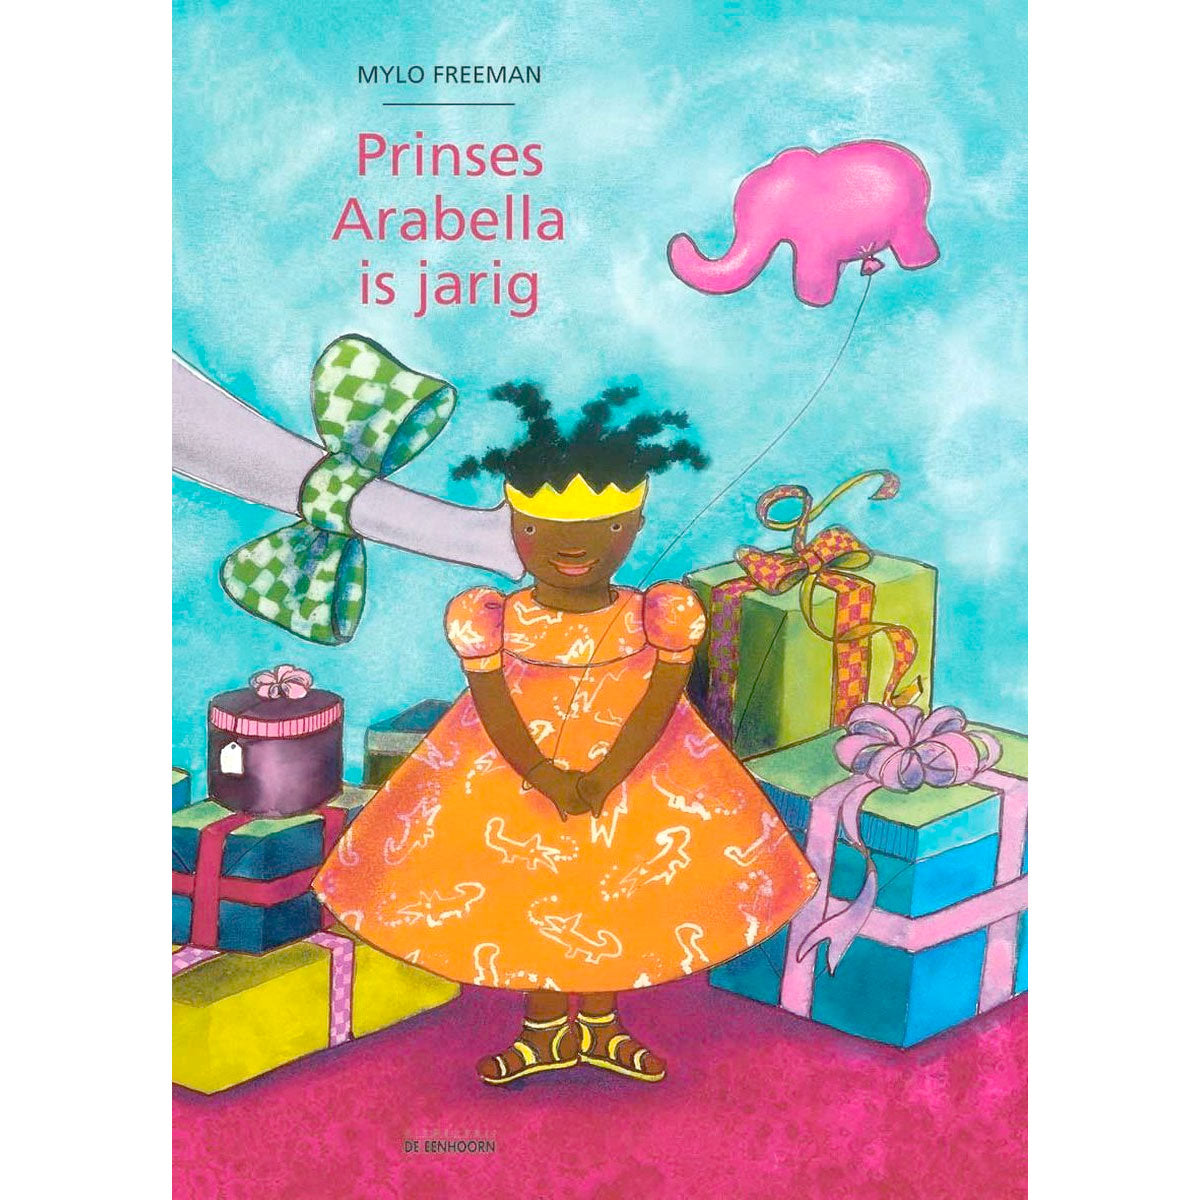 Prinses Arabella is jarig van Mylo Freeman